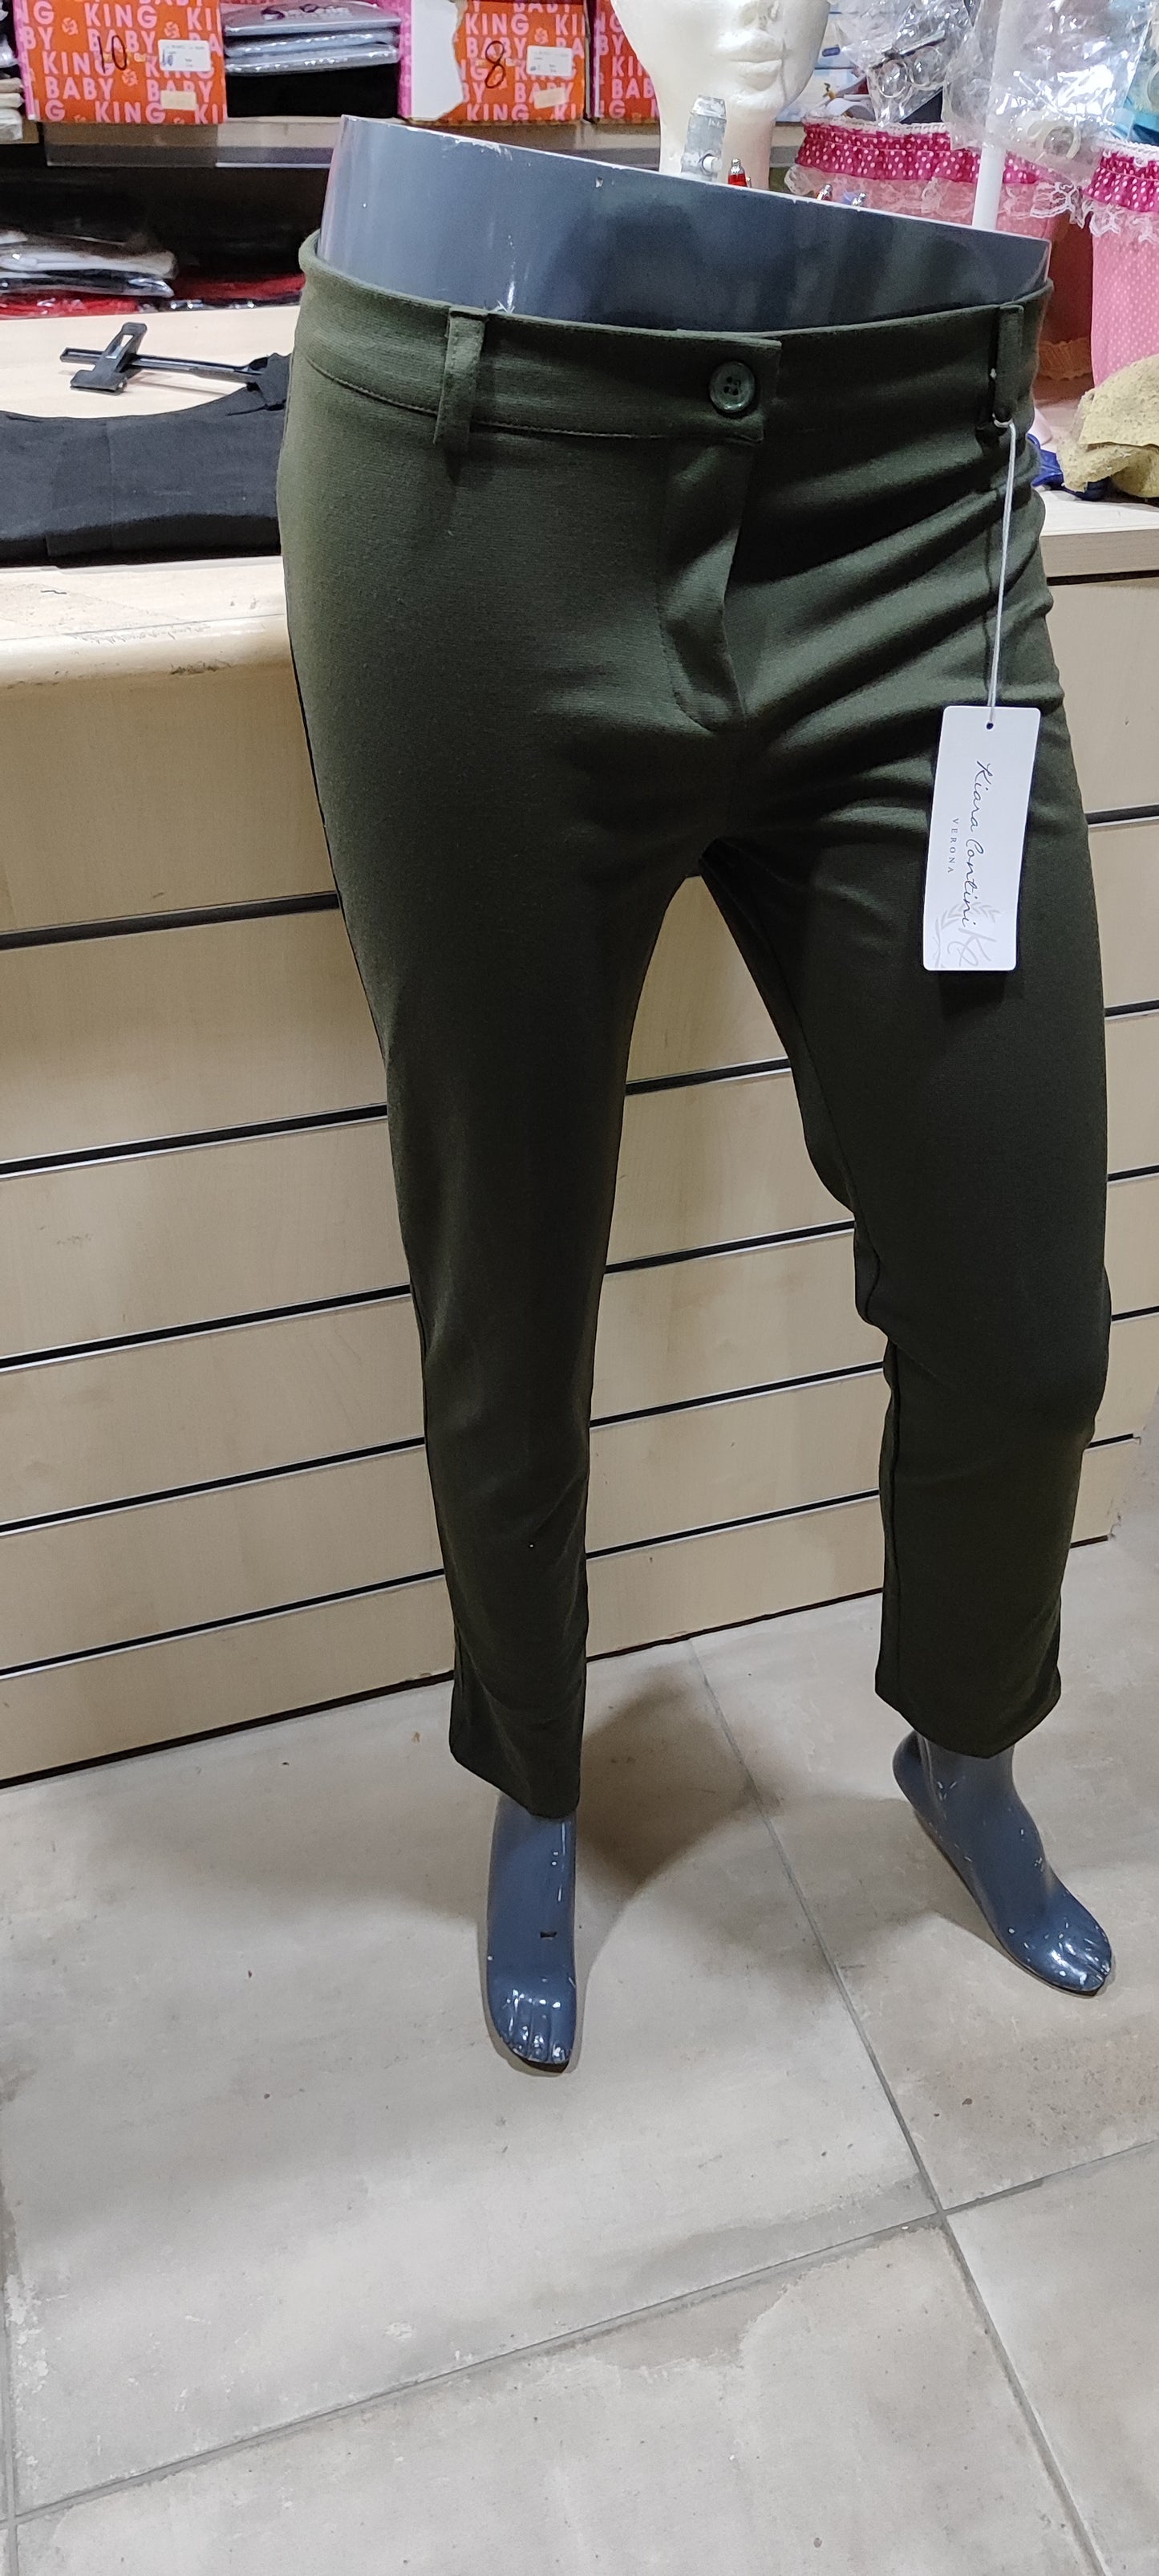 Pantaloni donna curvi 2,50